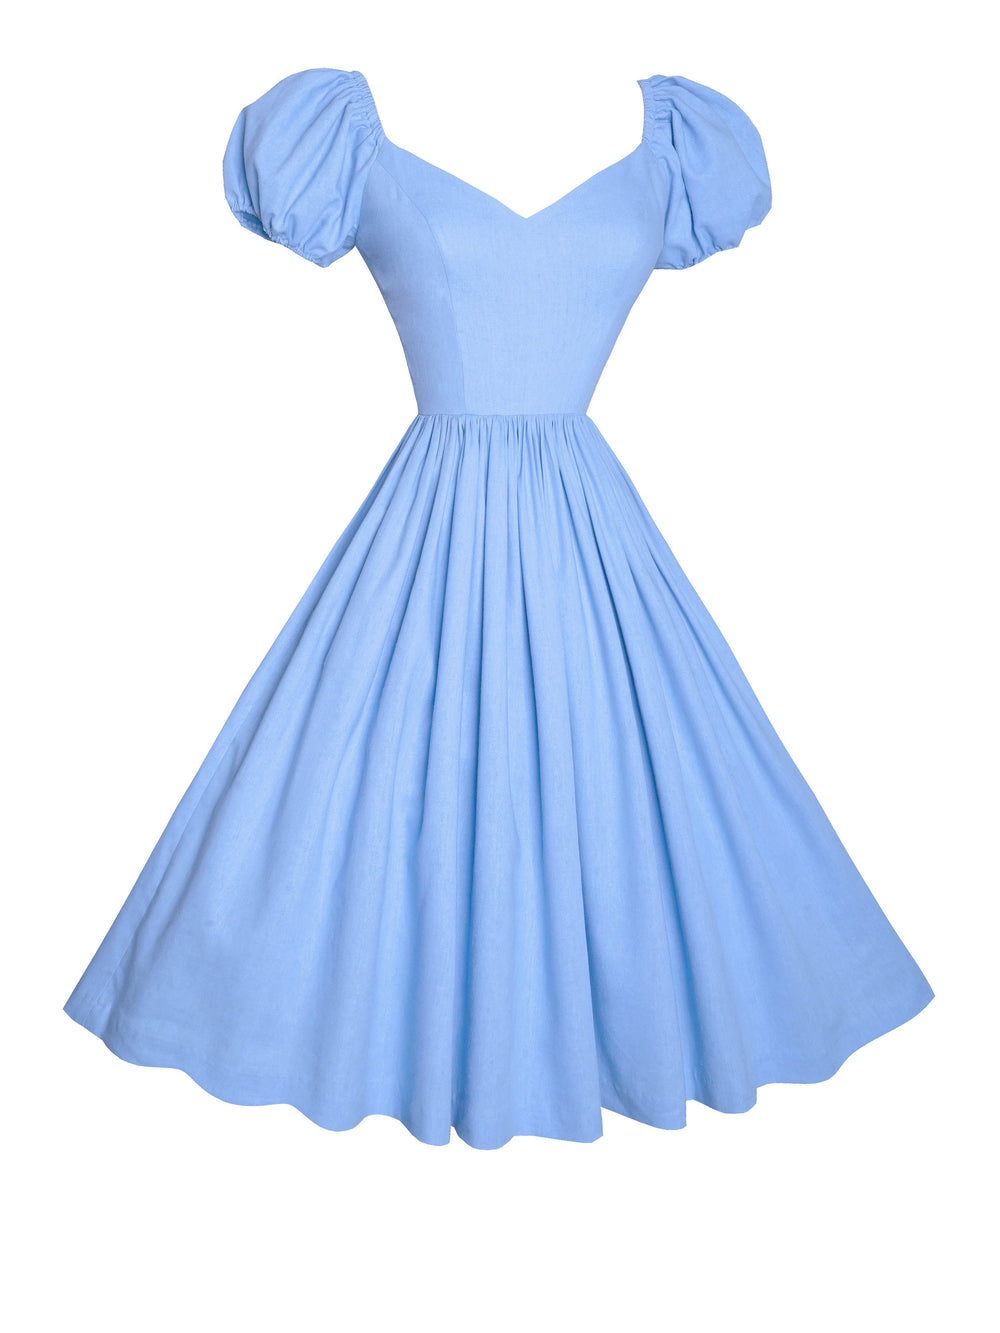 MTO - Margaret Dress in Powder Blue Linen